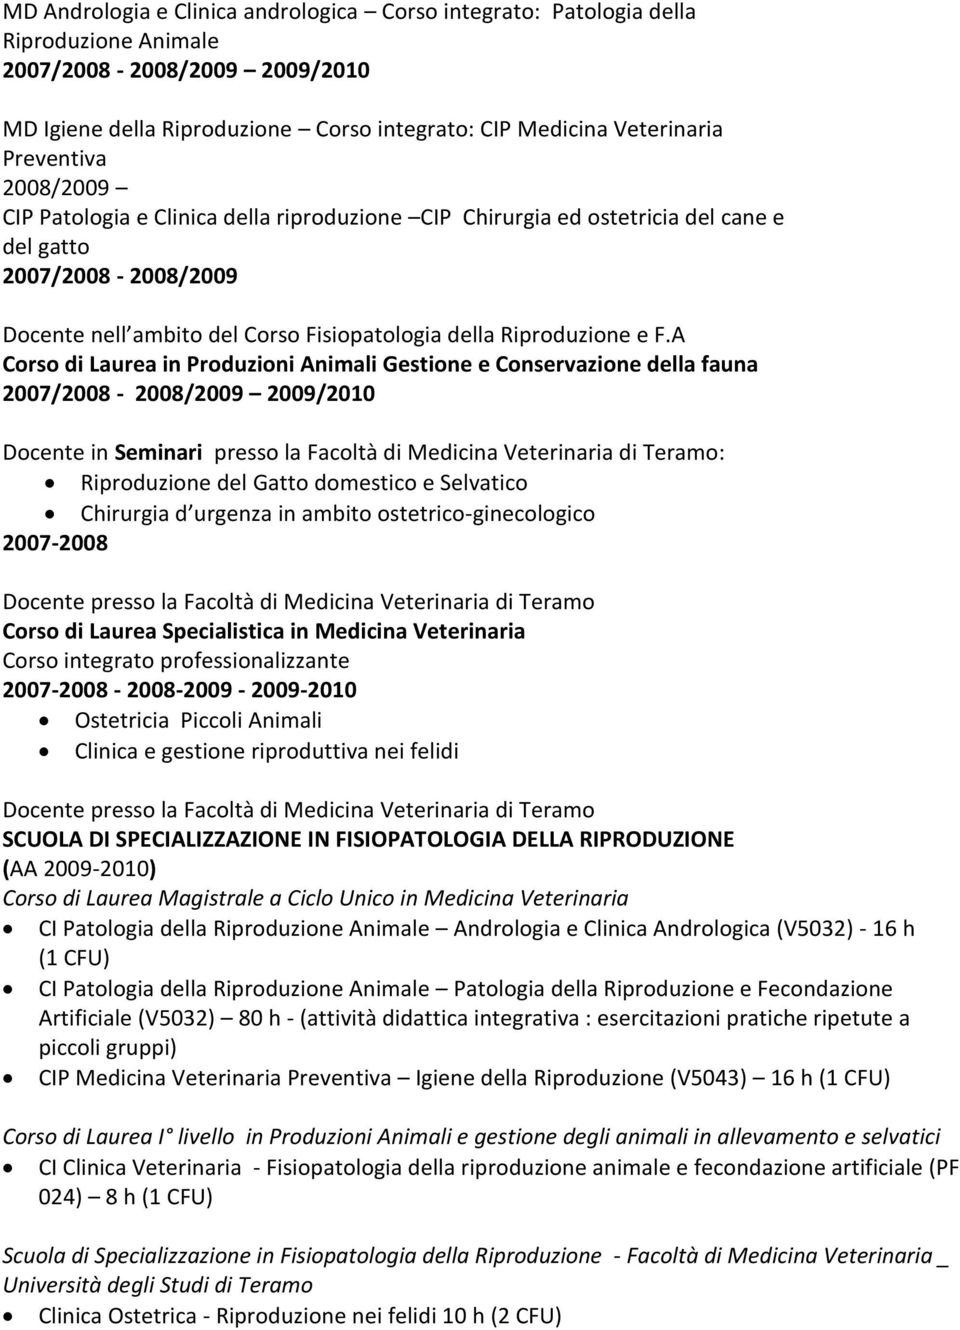 F.A Corso di Laurea in Produzioni Animali Gestione e Conservazione della fauna 2007/2008-2008/2009 2009/2010 Riproduzione del Gatto domestico e Selvatico Chirurgia d urgenza in ambito